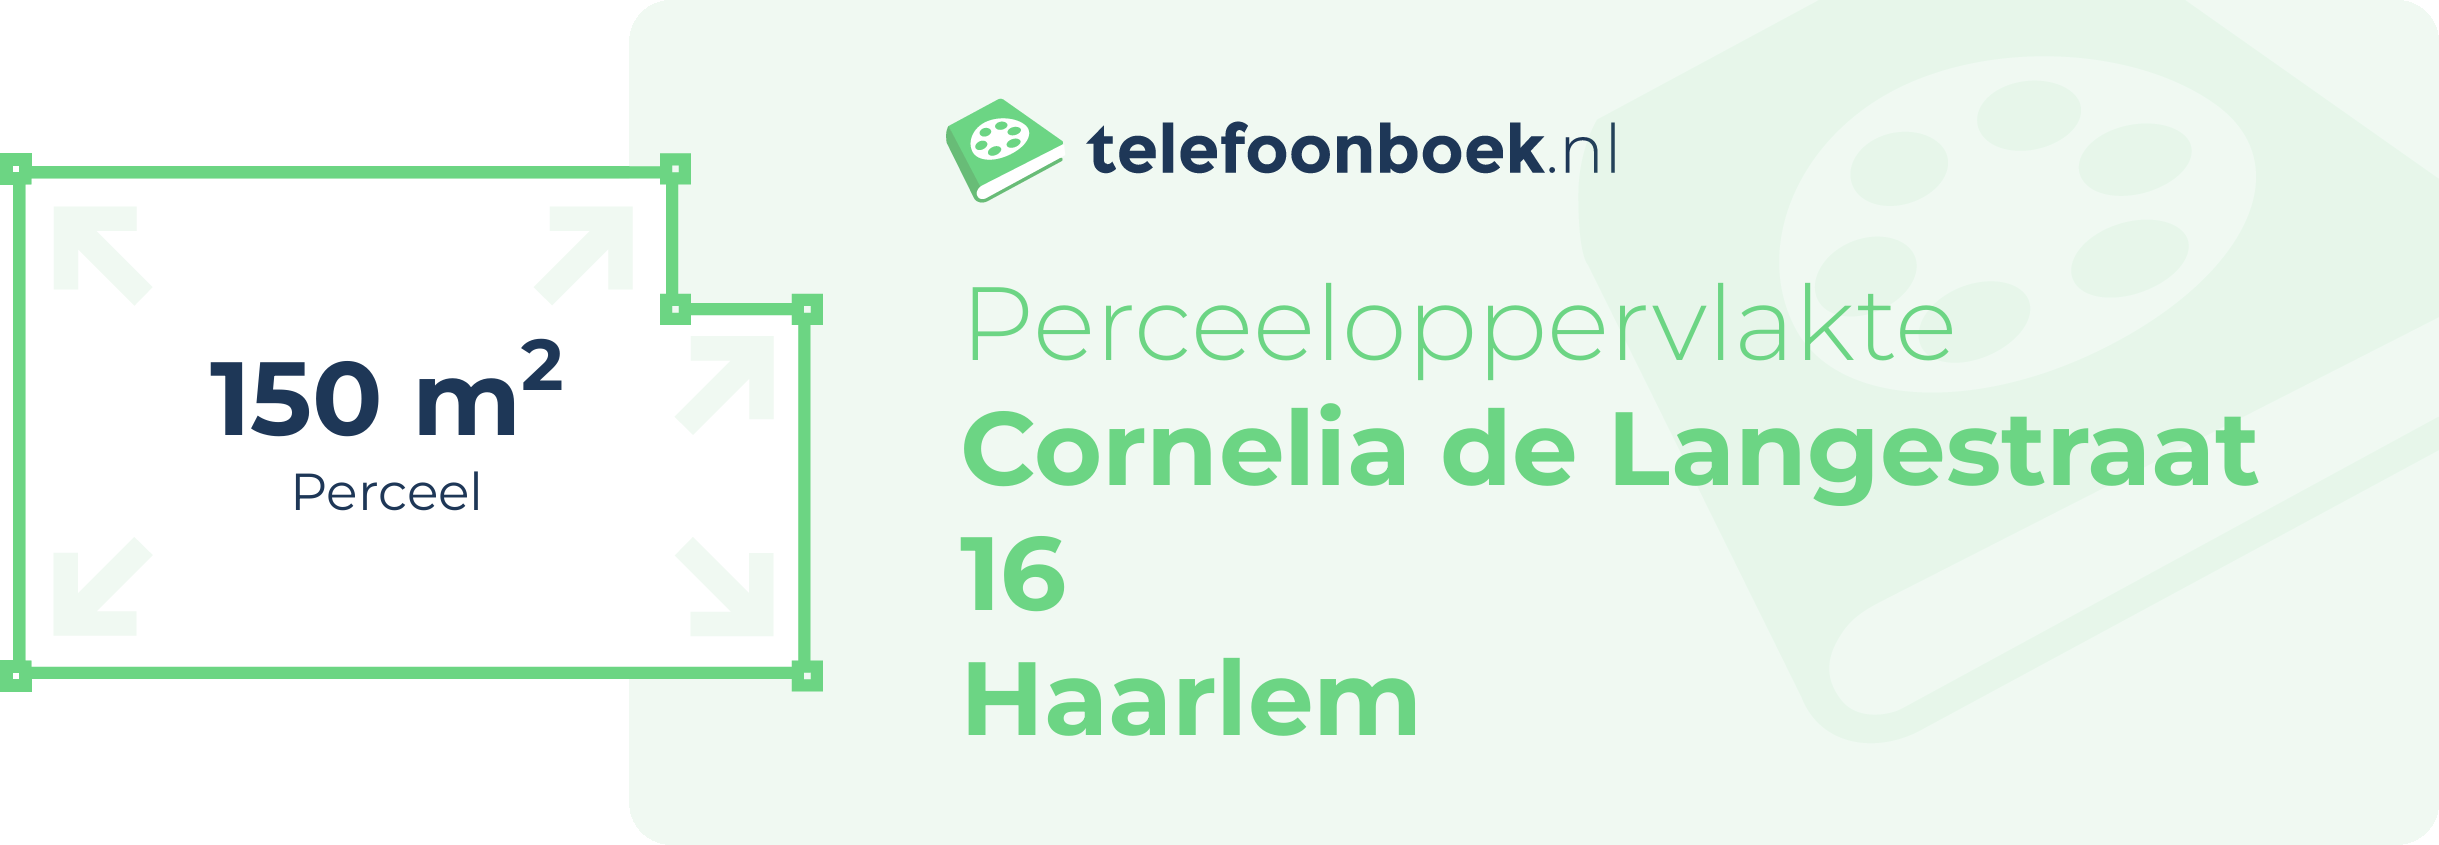 Perceeloppervlakte Cornelia De Langestraat 16 Haarlem